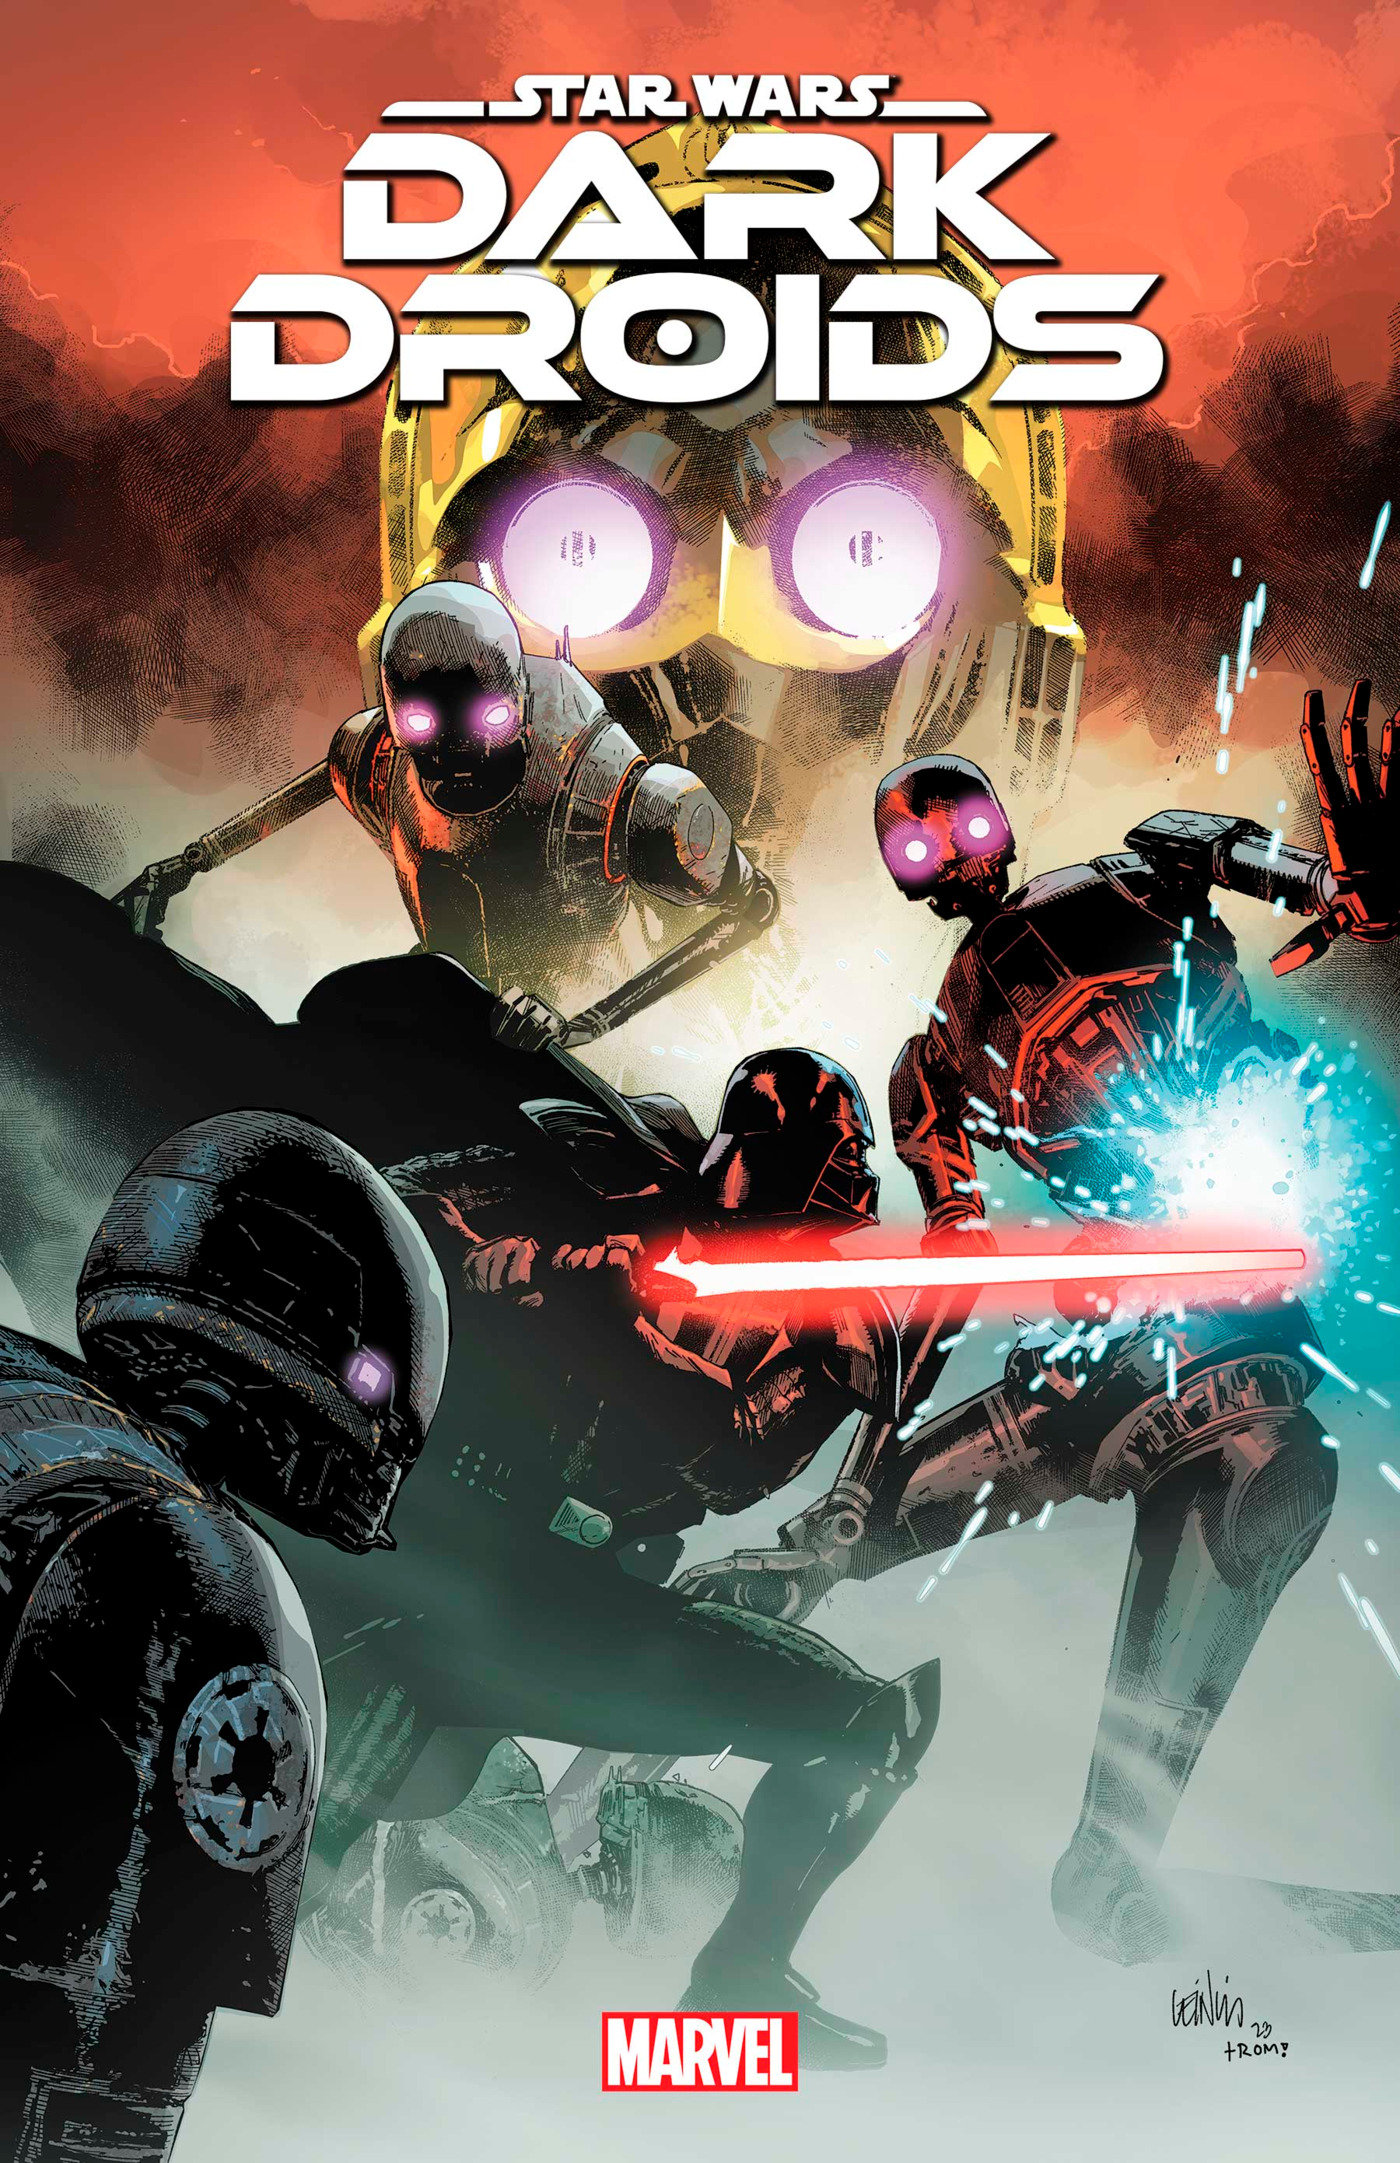 Star Wars: Dark Droids #3 (Dark Droids)